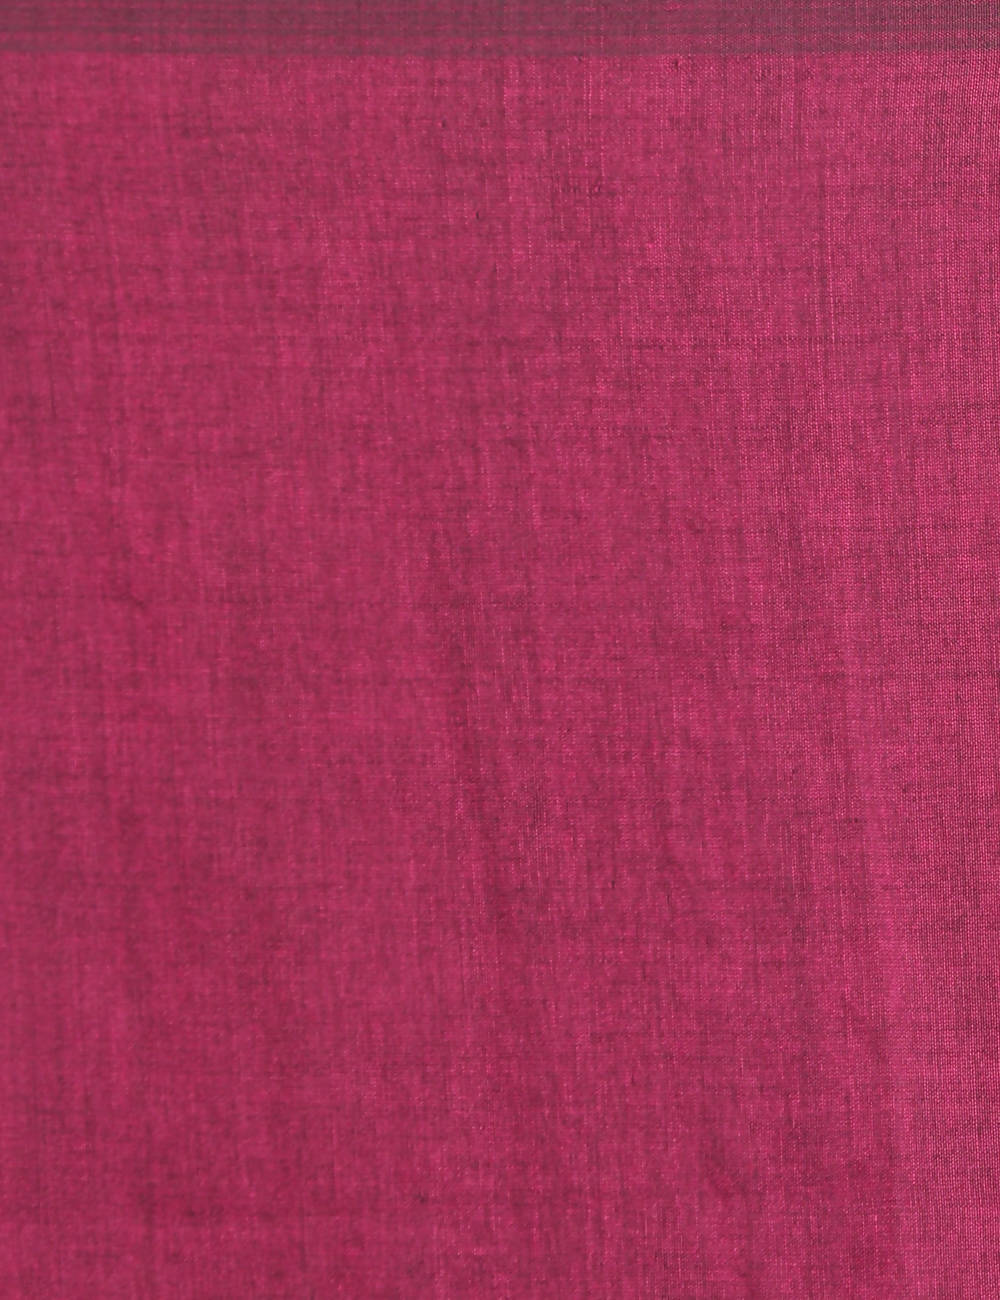 Pink magenta handspun handloom cotton saree